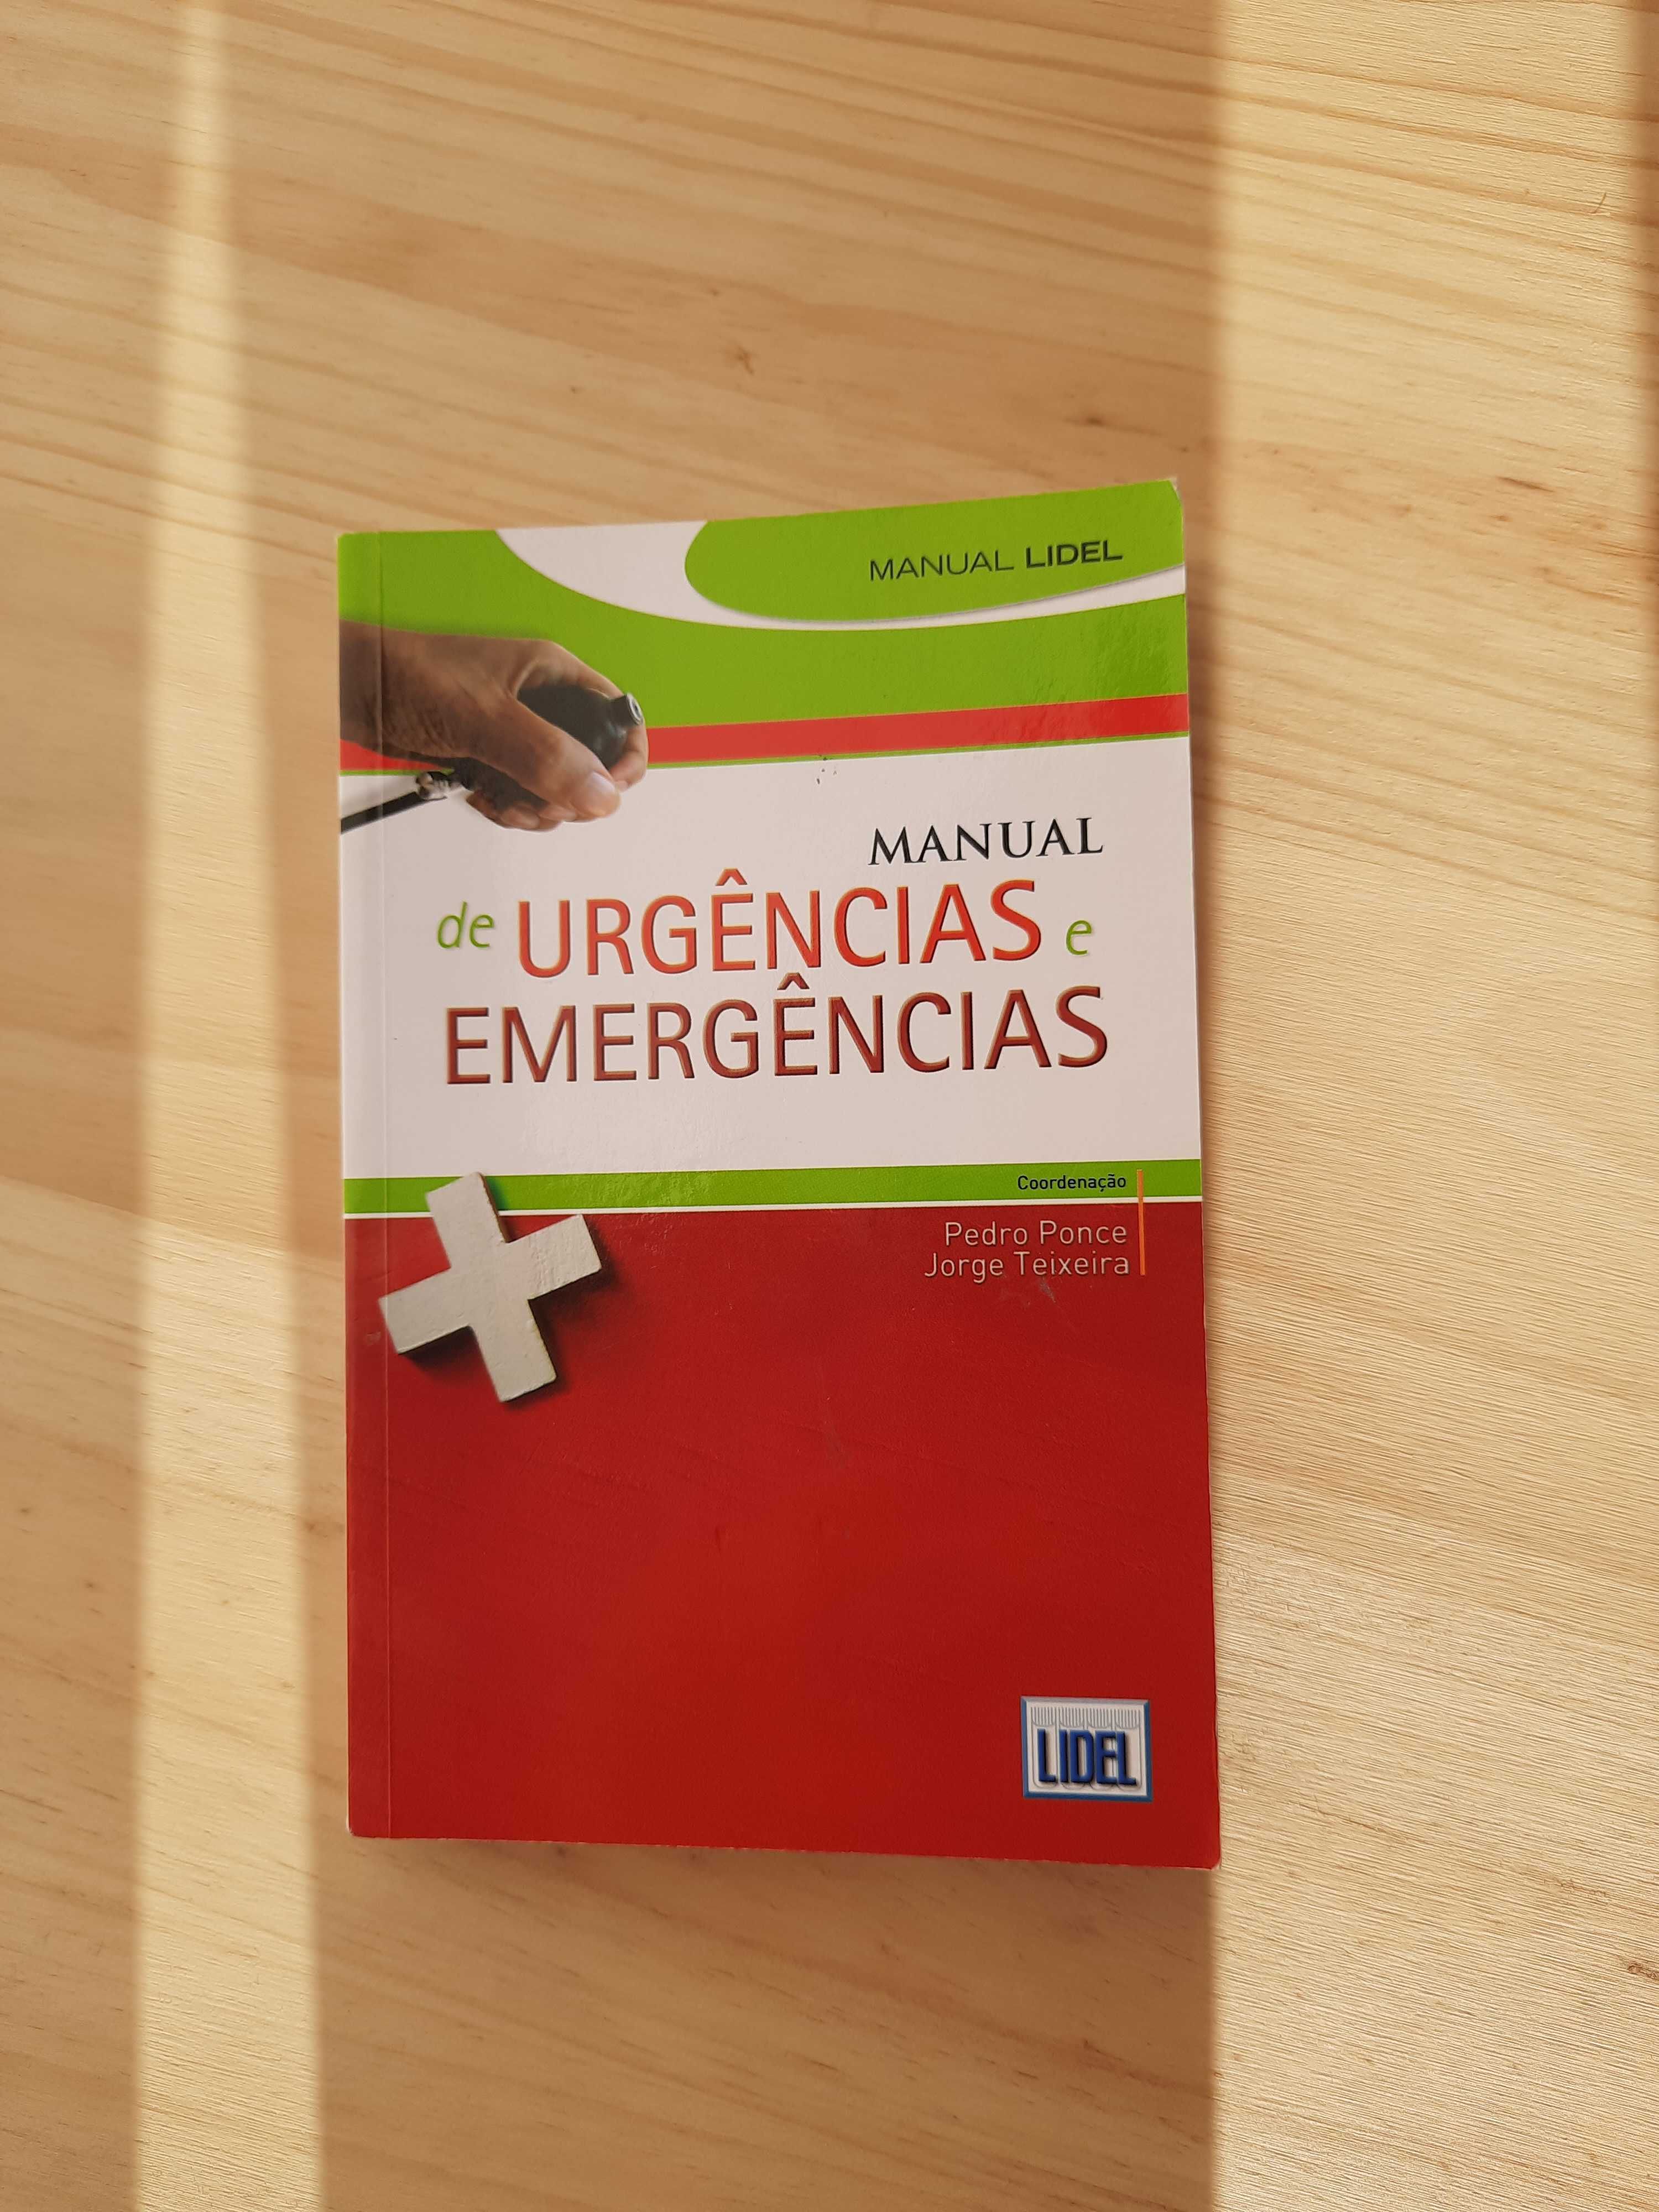 Manual de urgências e emergências (como novo)